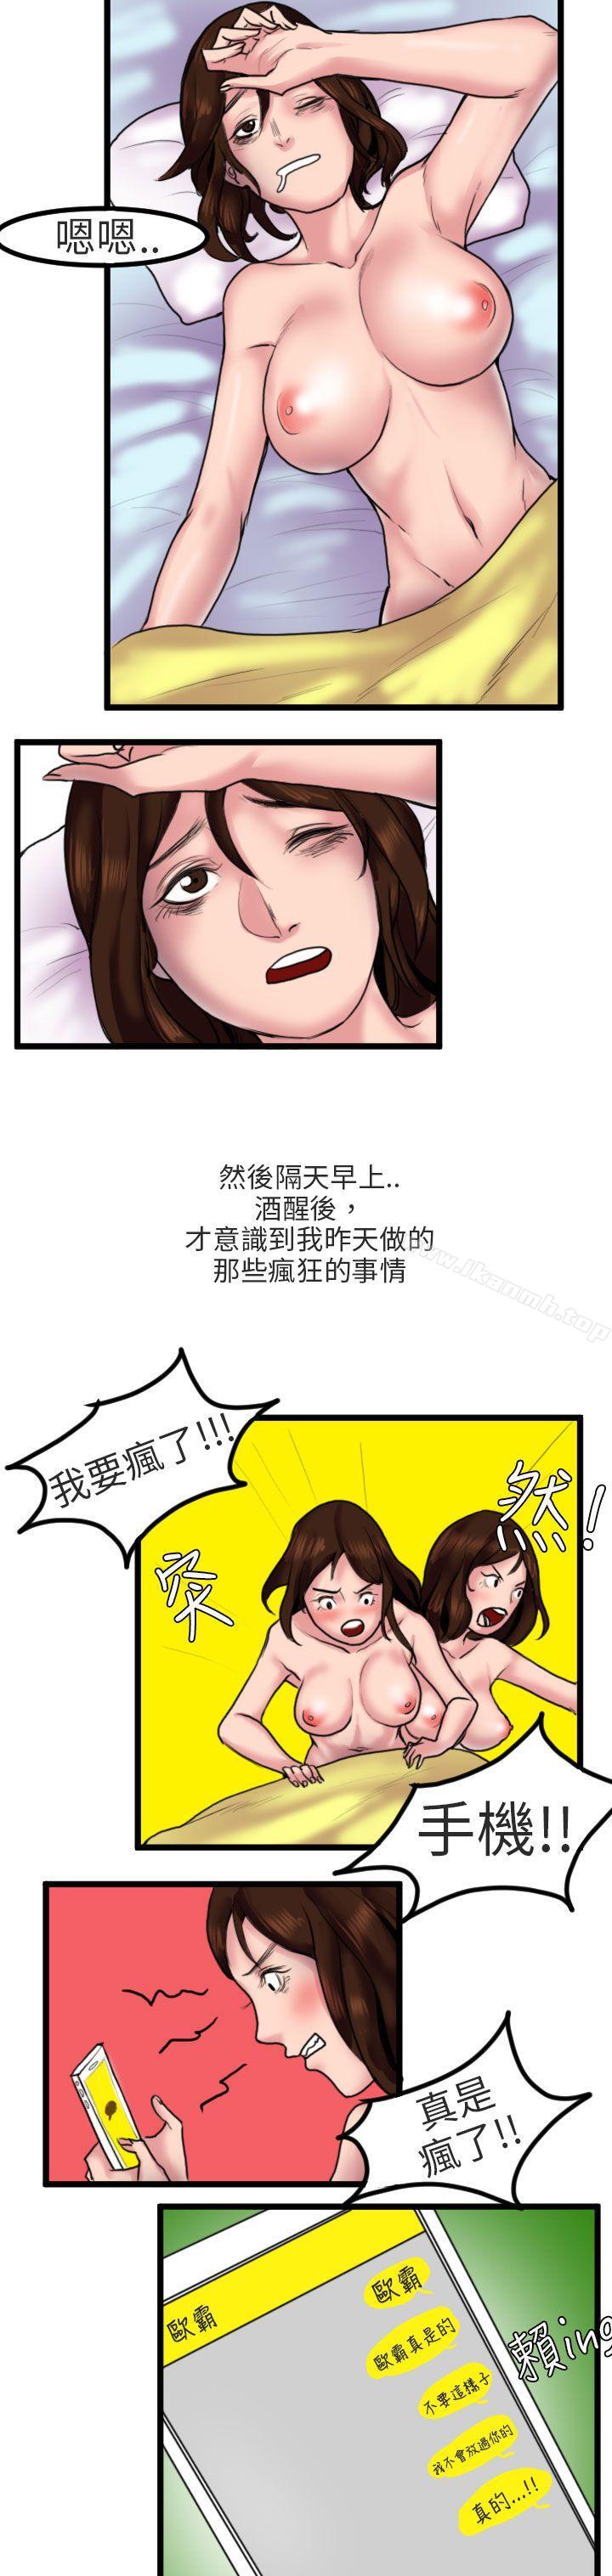 漫画韩国 秘密Story第二季   - 立即阅读 第二季 床與牆壁之間(下)第15漫画图片